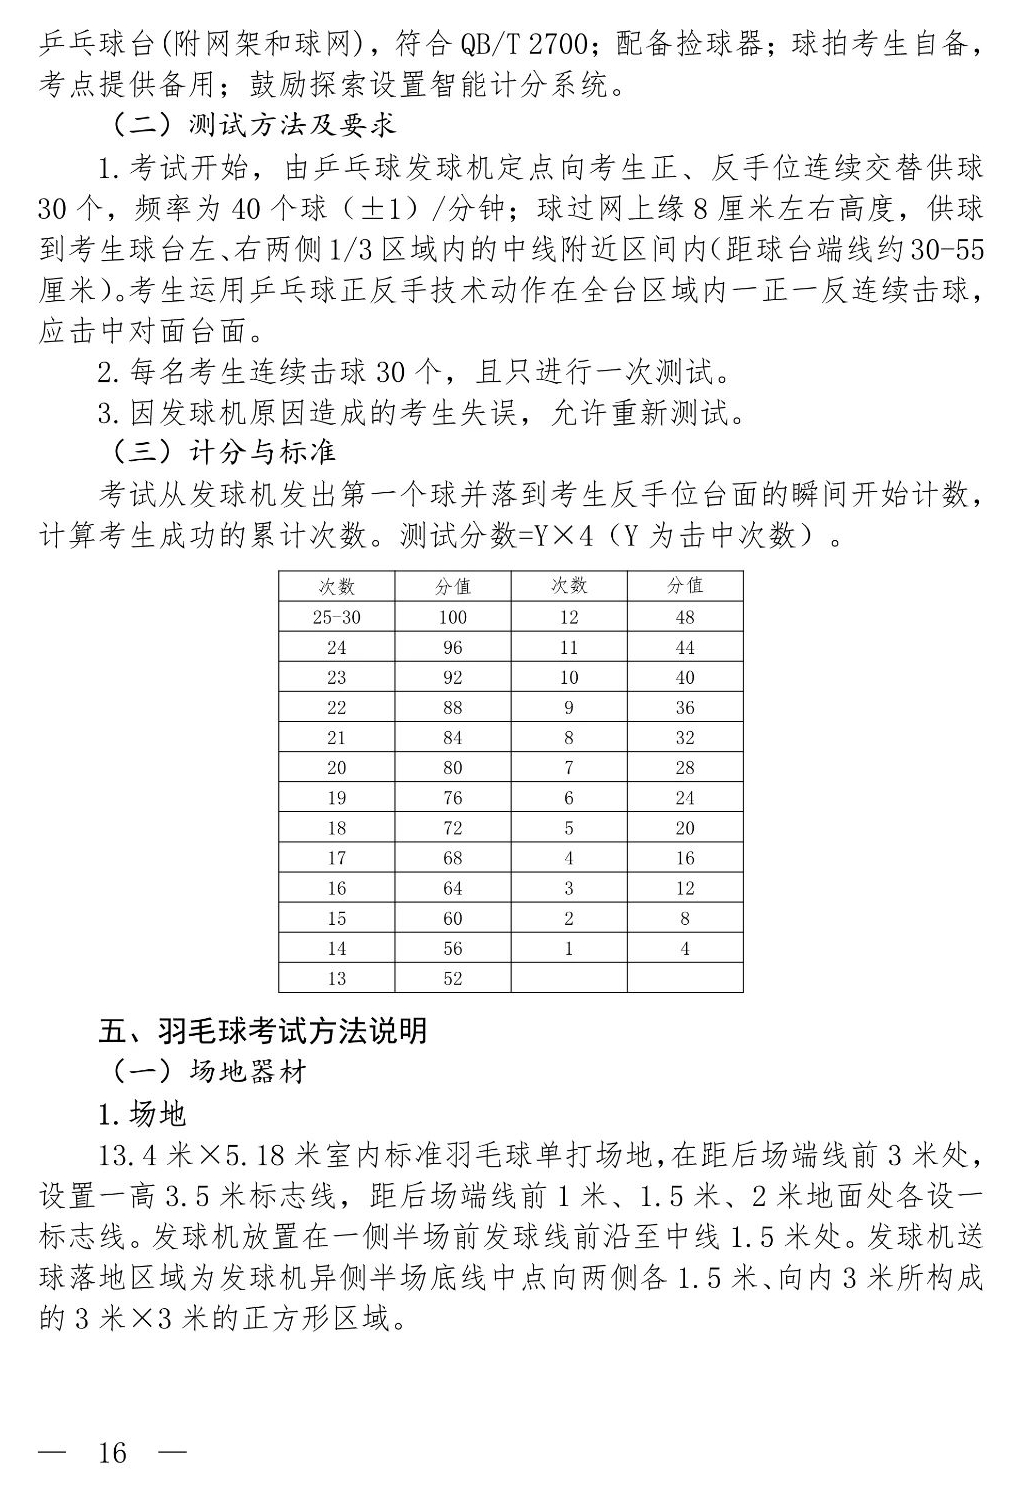 上海新中考体育评分标准！满足这项条件，免考满分！_项目_区进行_统考